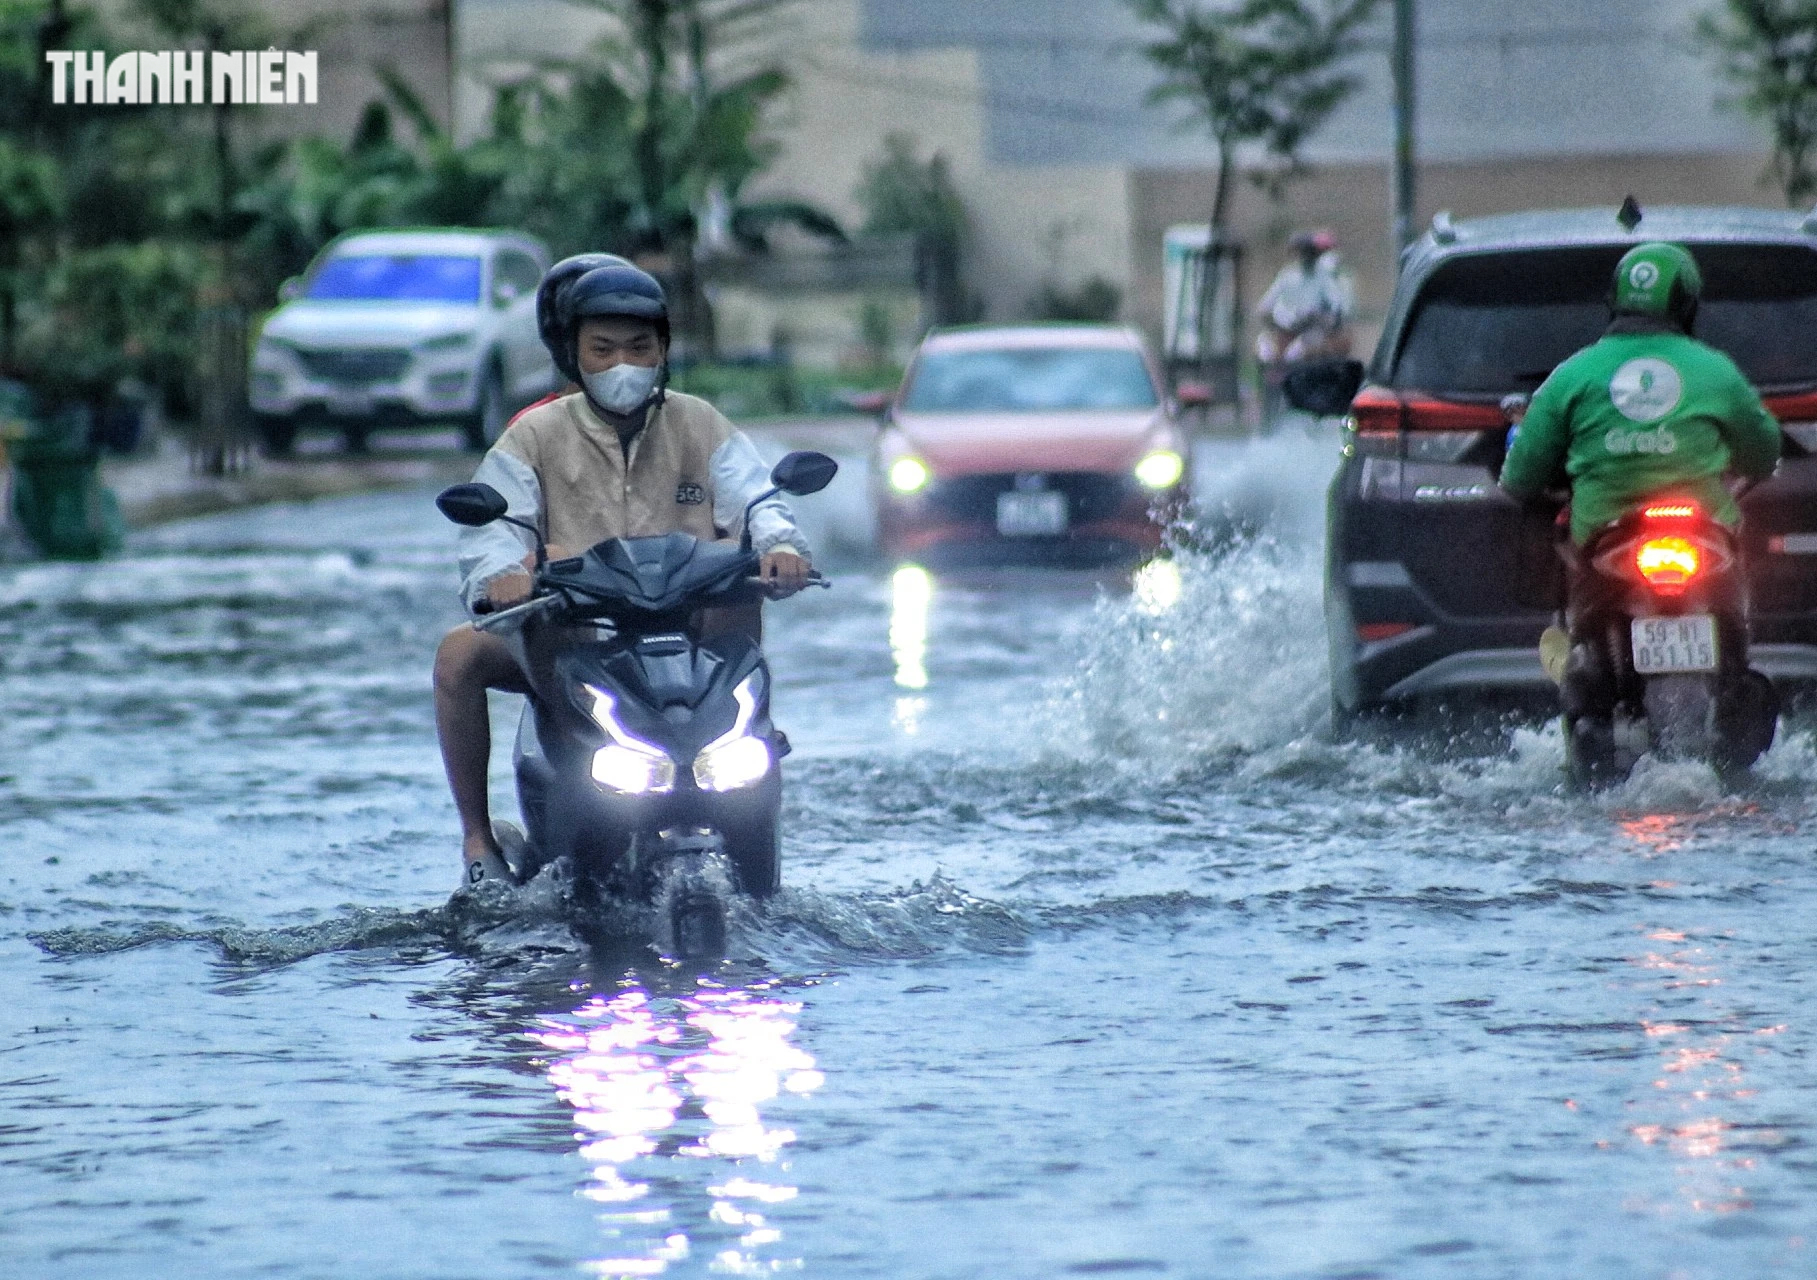 Cuối tuần, TP.HCM có mưa to: Cây bật gốc đổ ra đường, đường phố mênh mông nước - Ảnh 8.